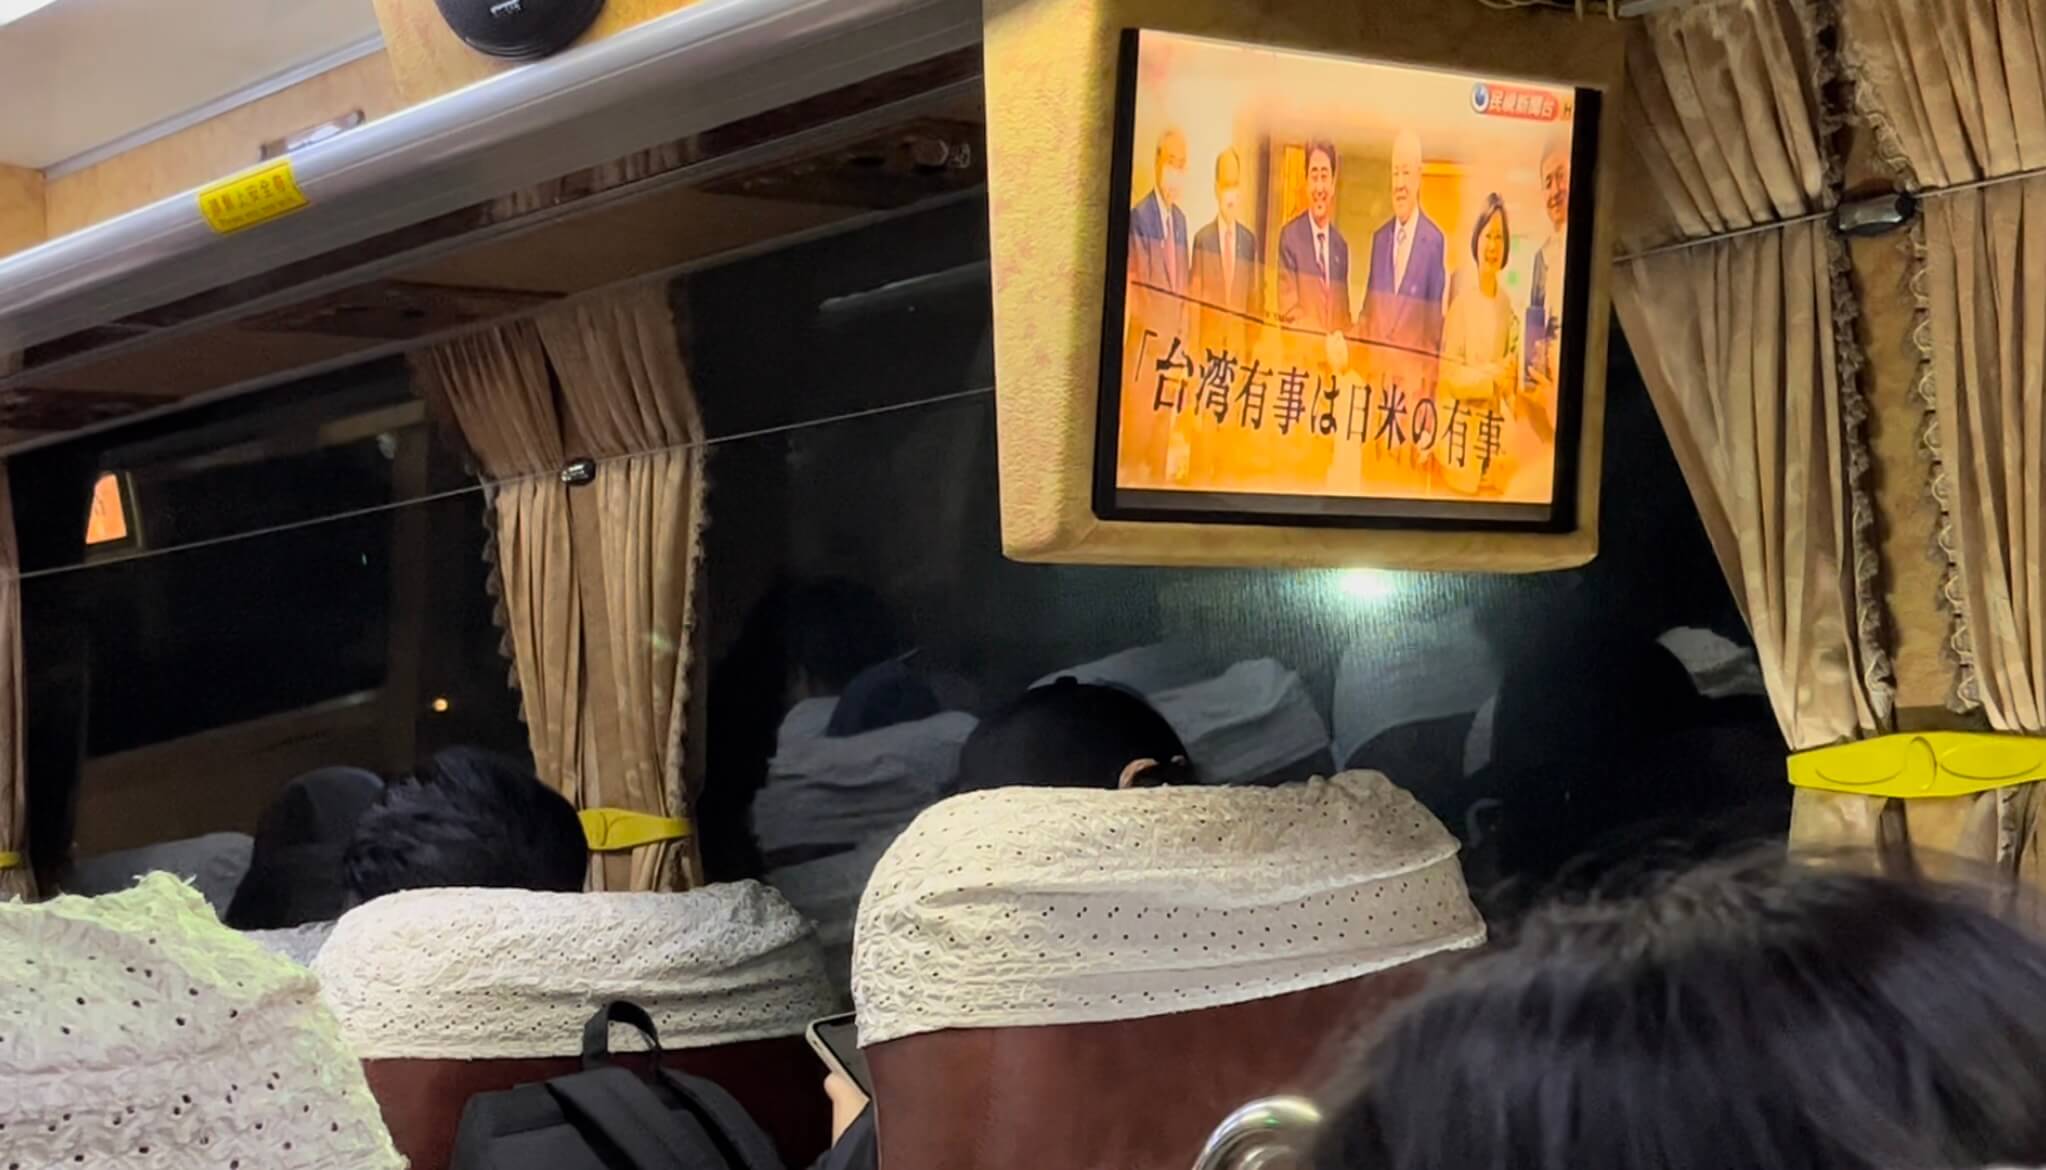 バスの車内のテレビでは台日友好の番組が（亞聯客運1728）